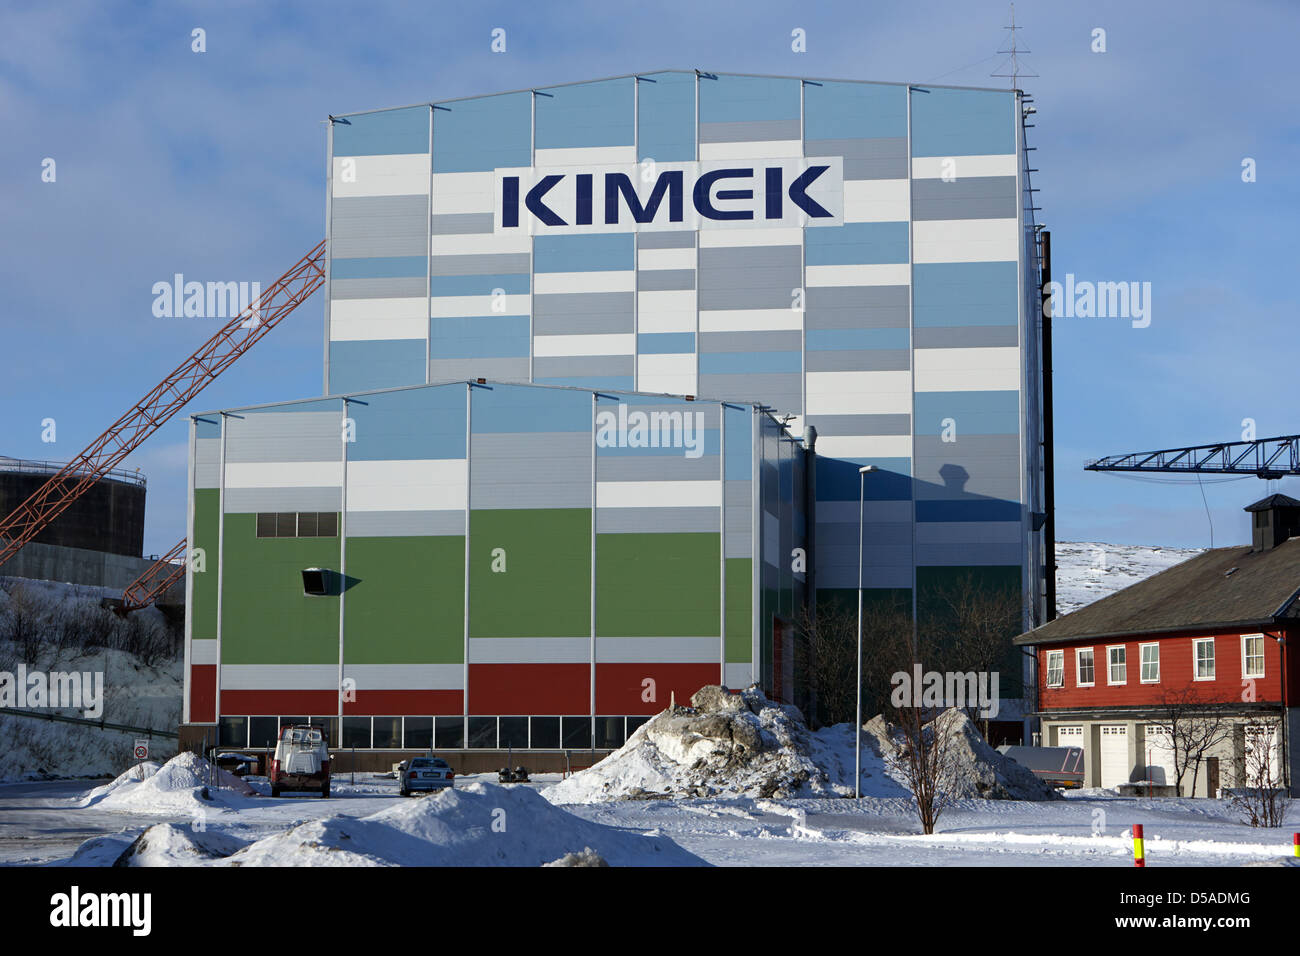 Chantier de construction de la cale sèche kimex kirkenes Norvège finnmark europe Banque D'Images